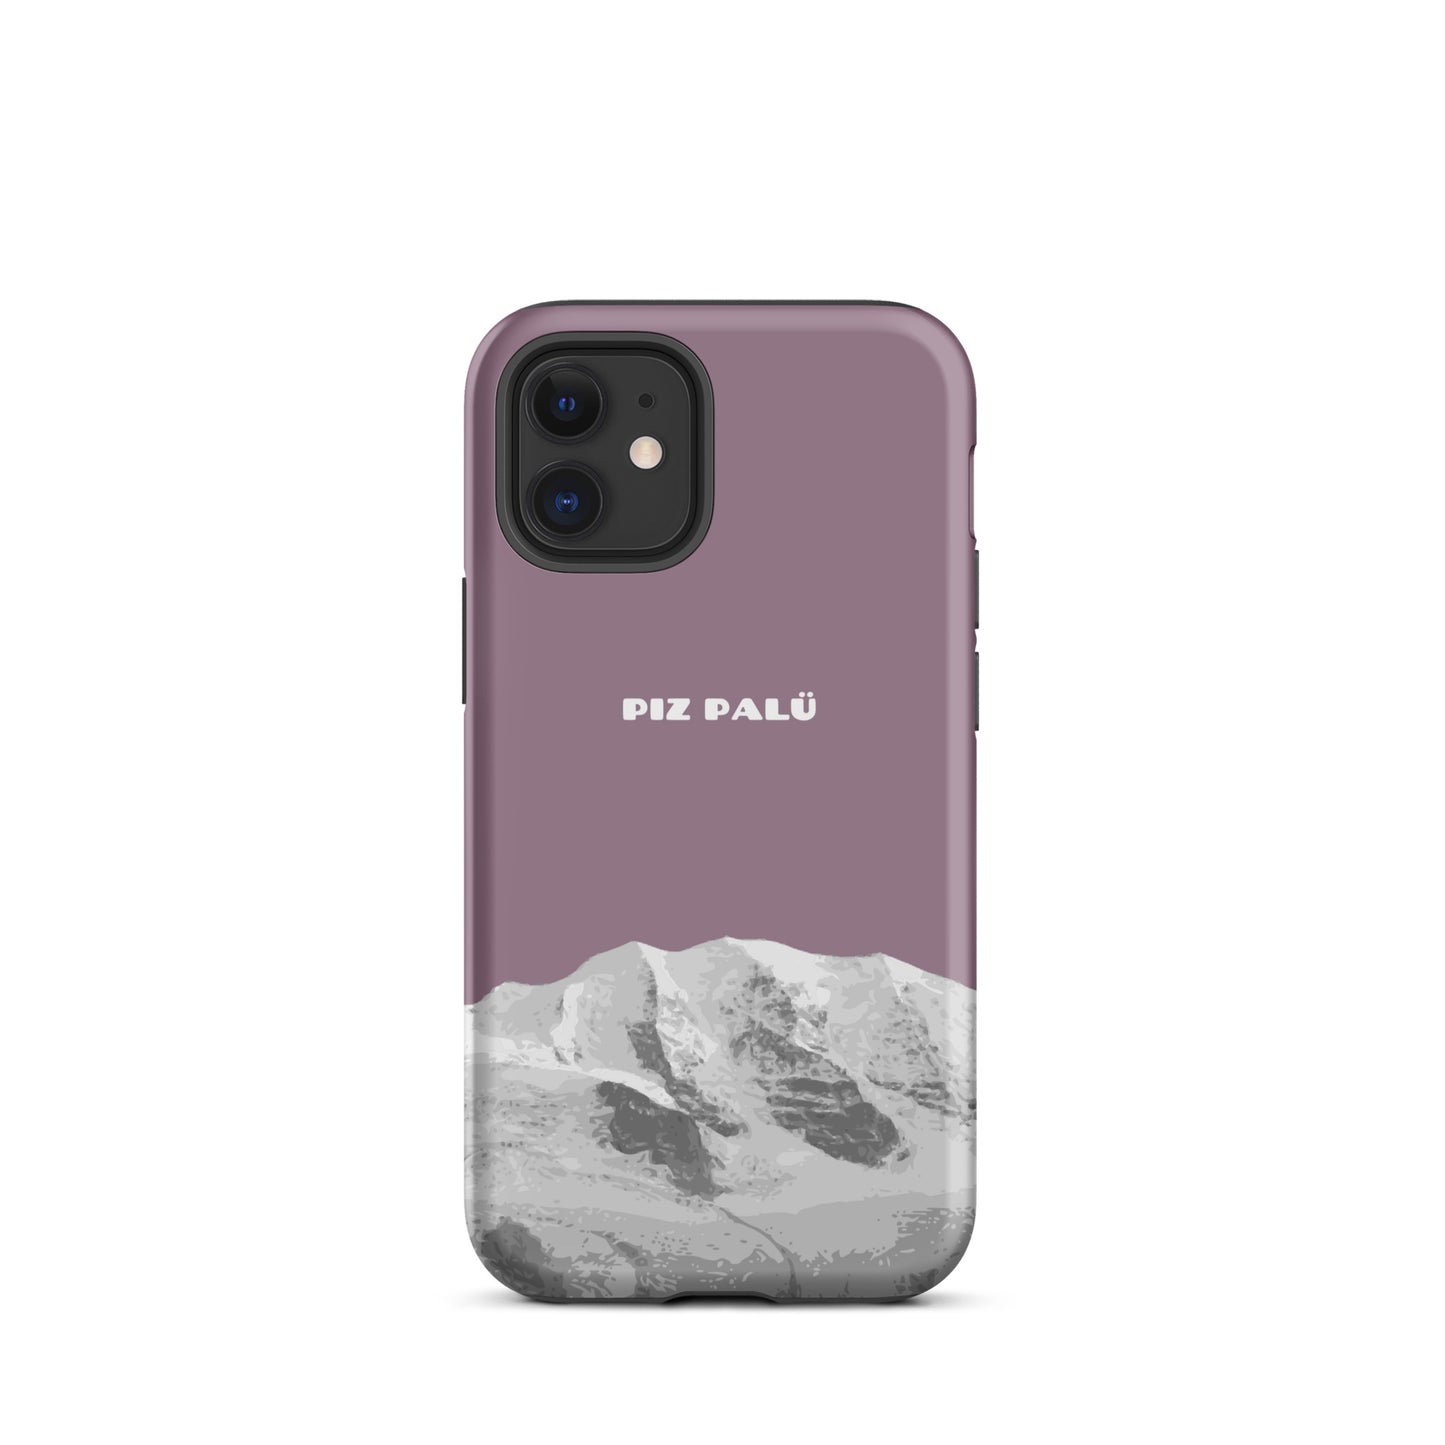 Hülle für das iPhone 12 Mini von Apple in der Farbe Pastellviolett, dass den Piz Palü in Graubünden zeigt.